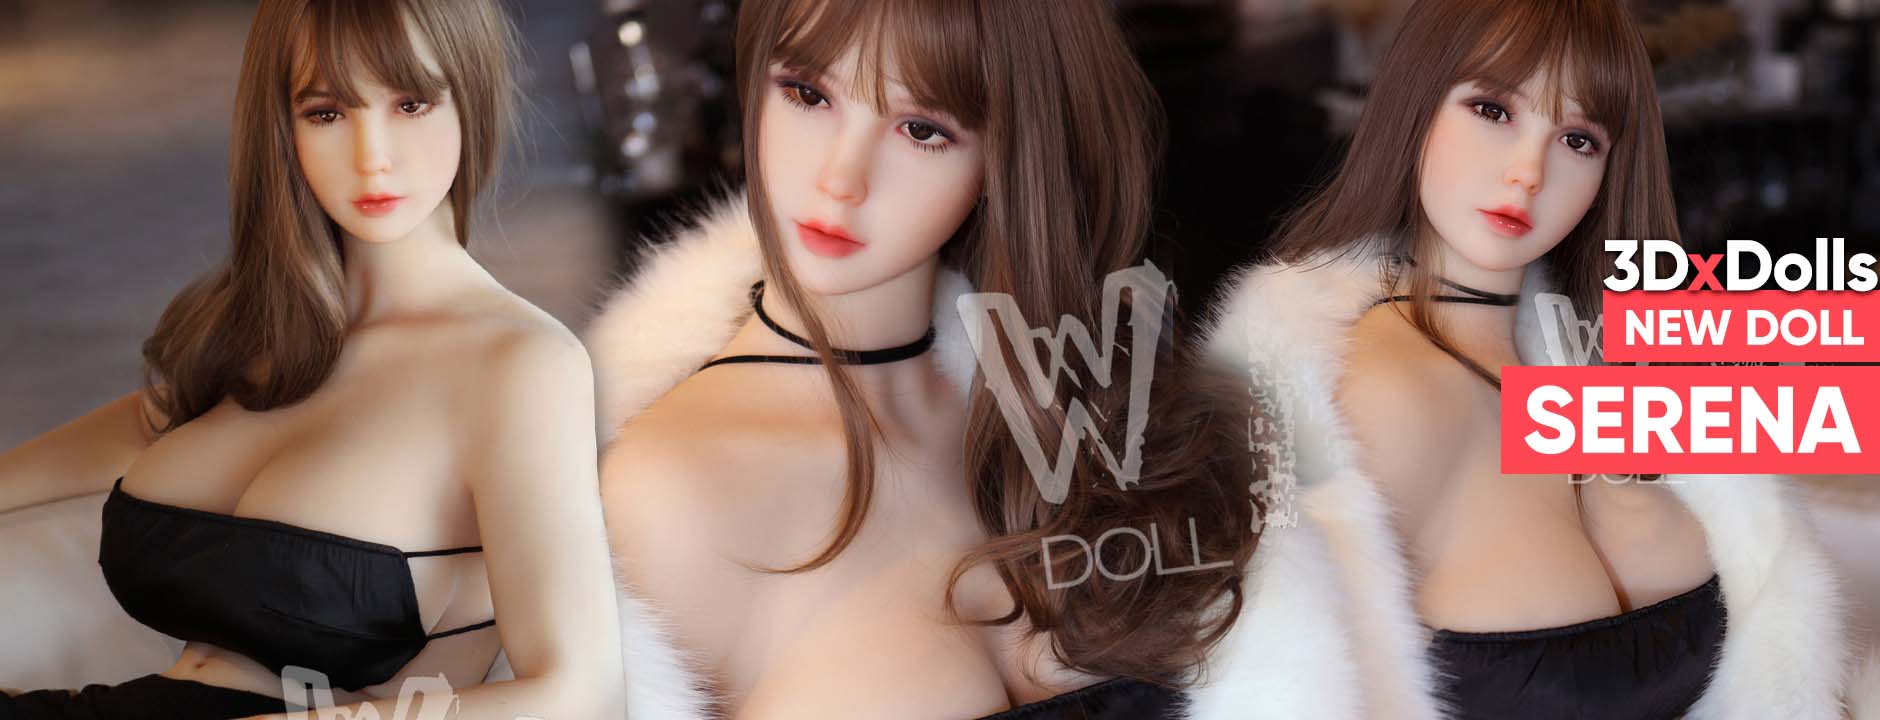 3DxDolls.com - new doll Serena